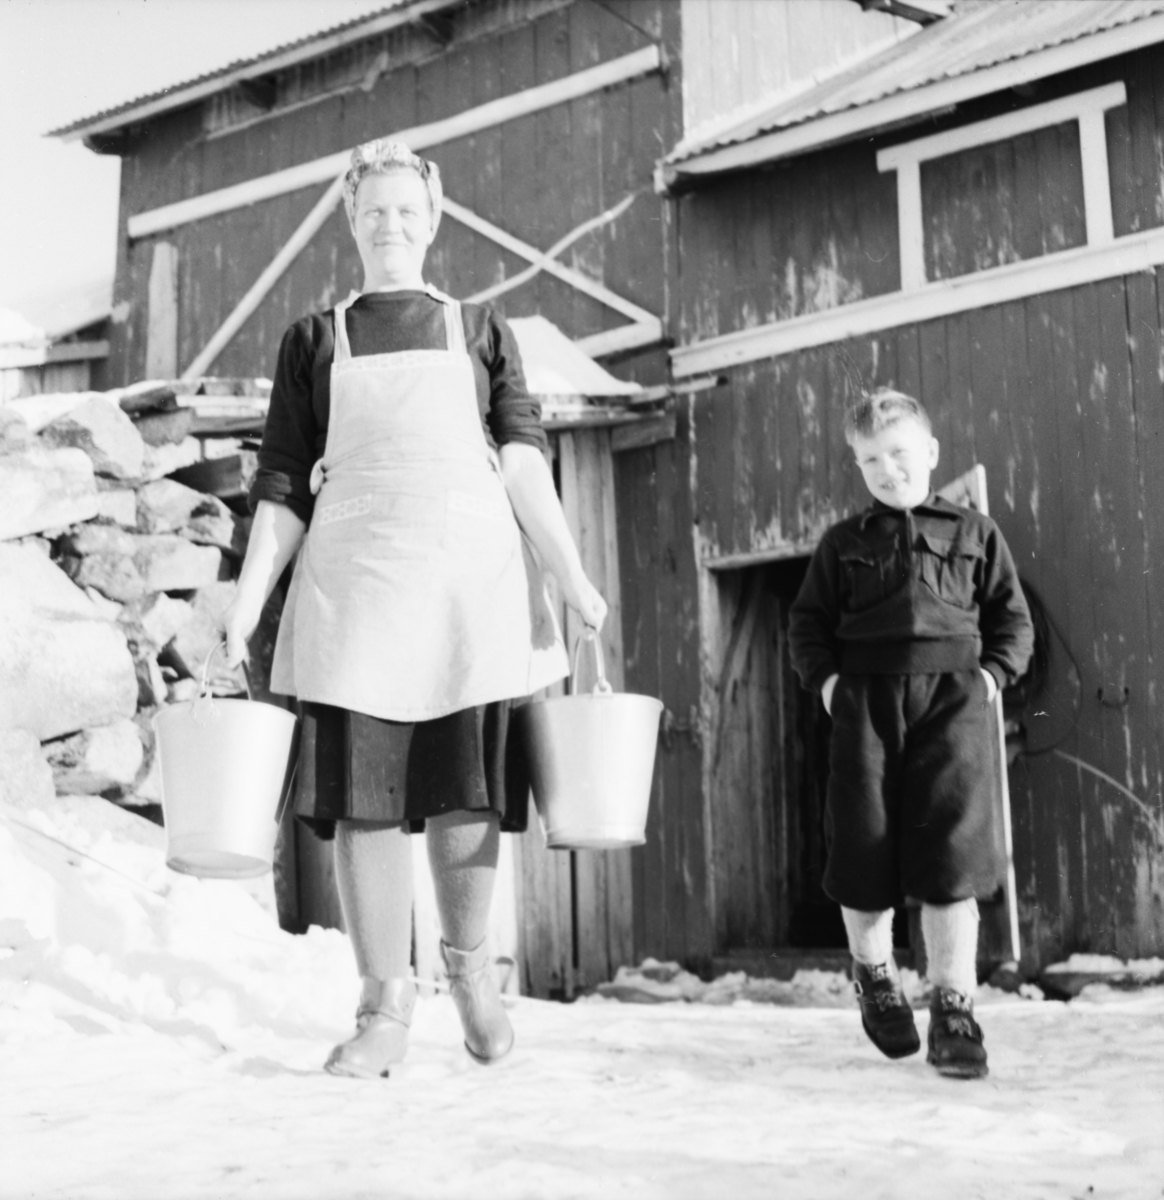 Vardens arkiv. "Besøk på fjellgård mellom Rauland og Rjukan" 07.01.1954